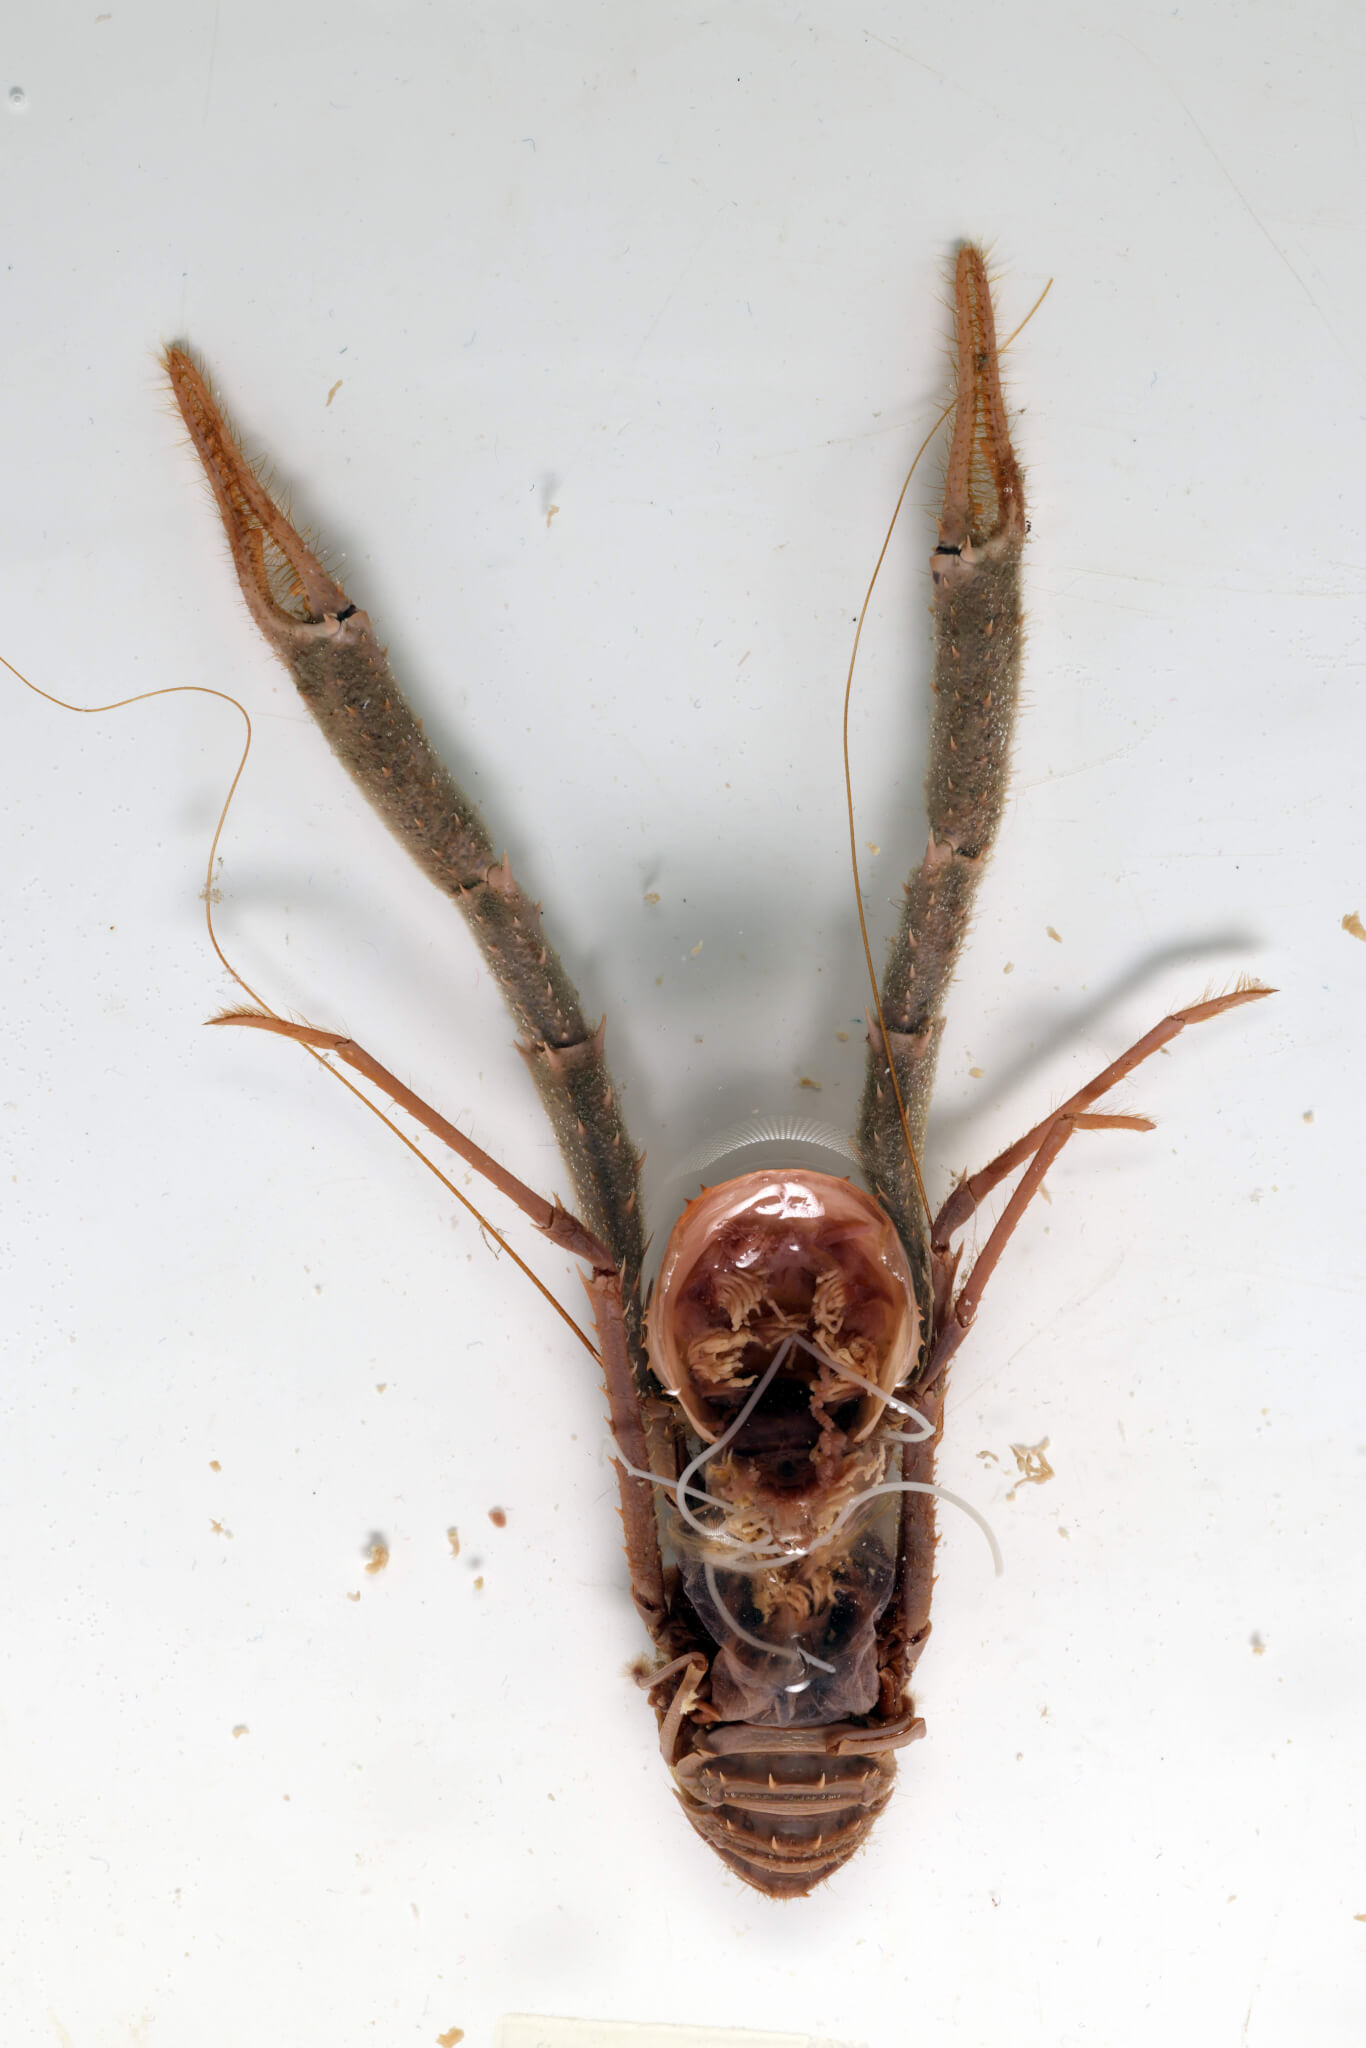 Fotografía escenificada del huésped (muerto) de la robusta langosta Munida sp., de Noruega, con un gusano marino. 